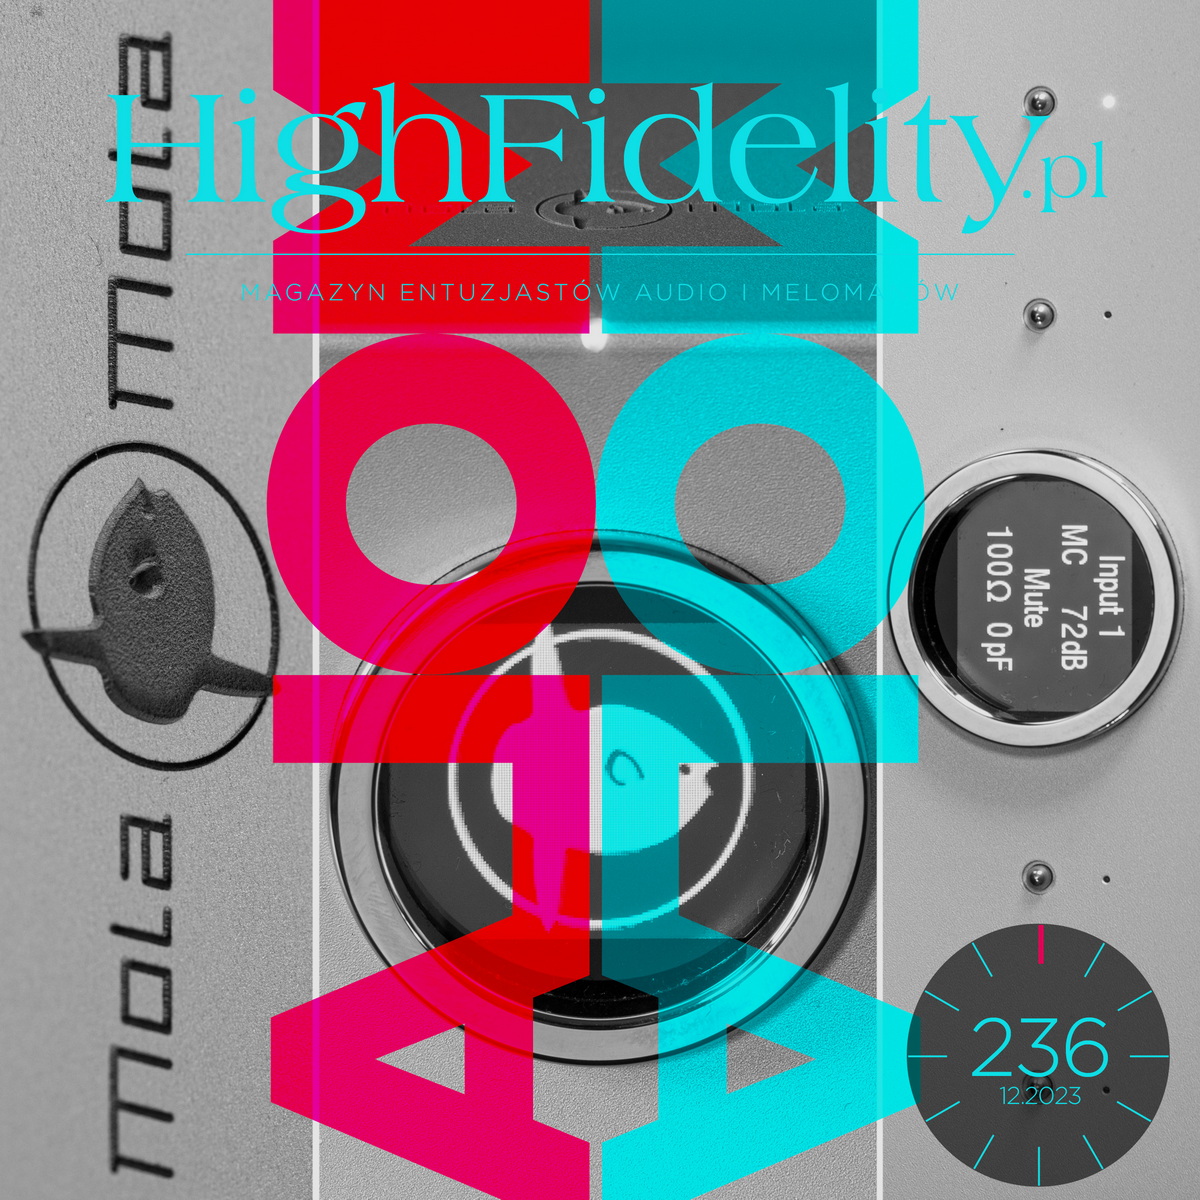 High Fidelity” № 236 ⸜ GRUDZIEŃ 2023. Zapowiedź